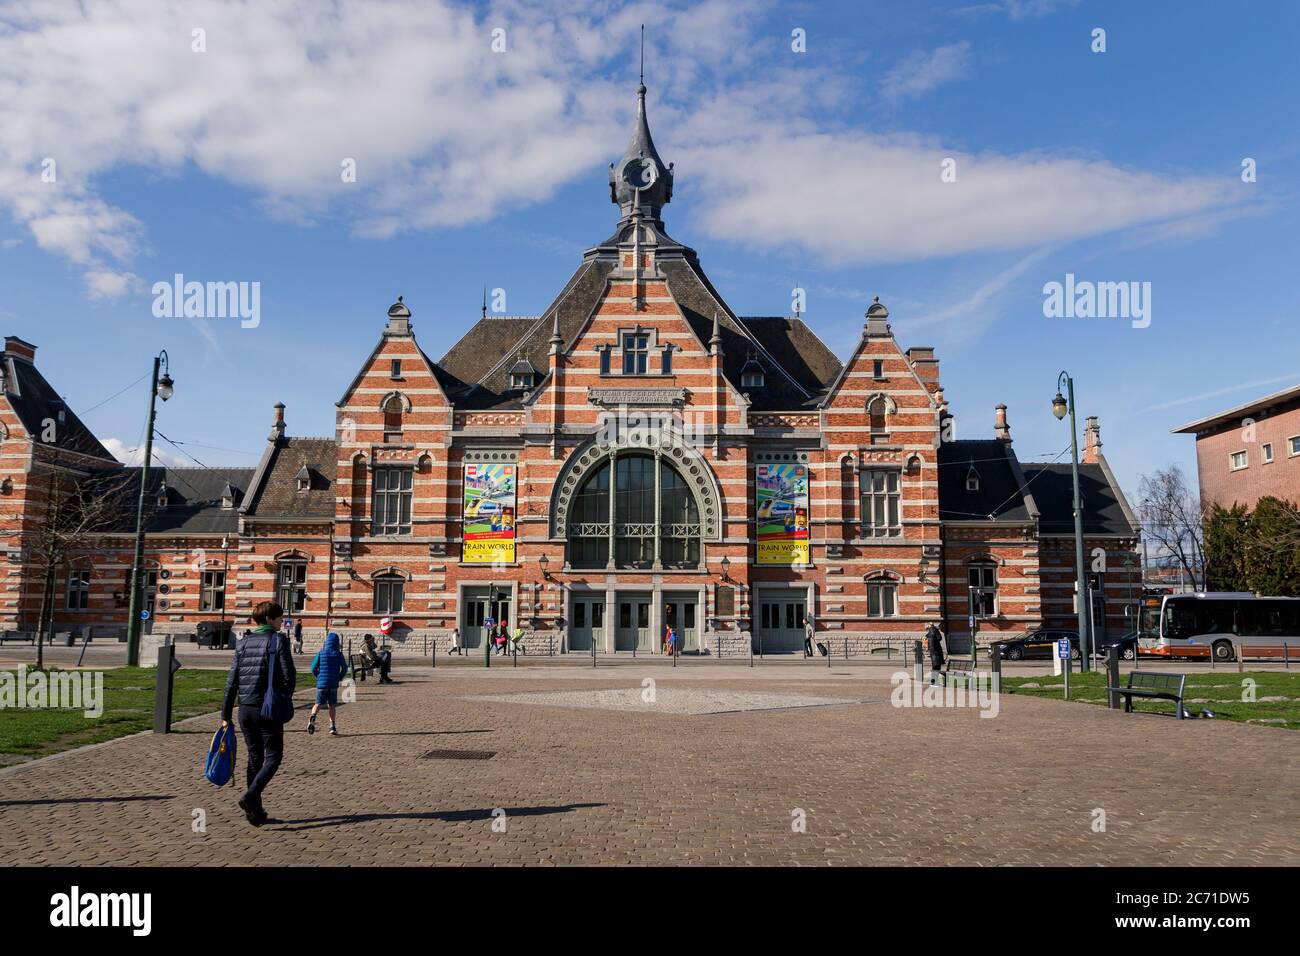 Schaarbeek, capitale della Regione di Bruxelles, Belgio - 8 marzo 2019 : facciata della stazione ferroviaria di Schaarbeek (fr : Schaerbeek) e la sqare Pricess Elisabe Foto Stock